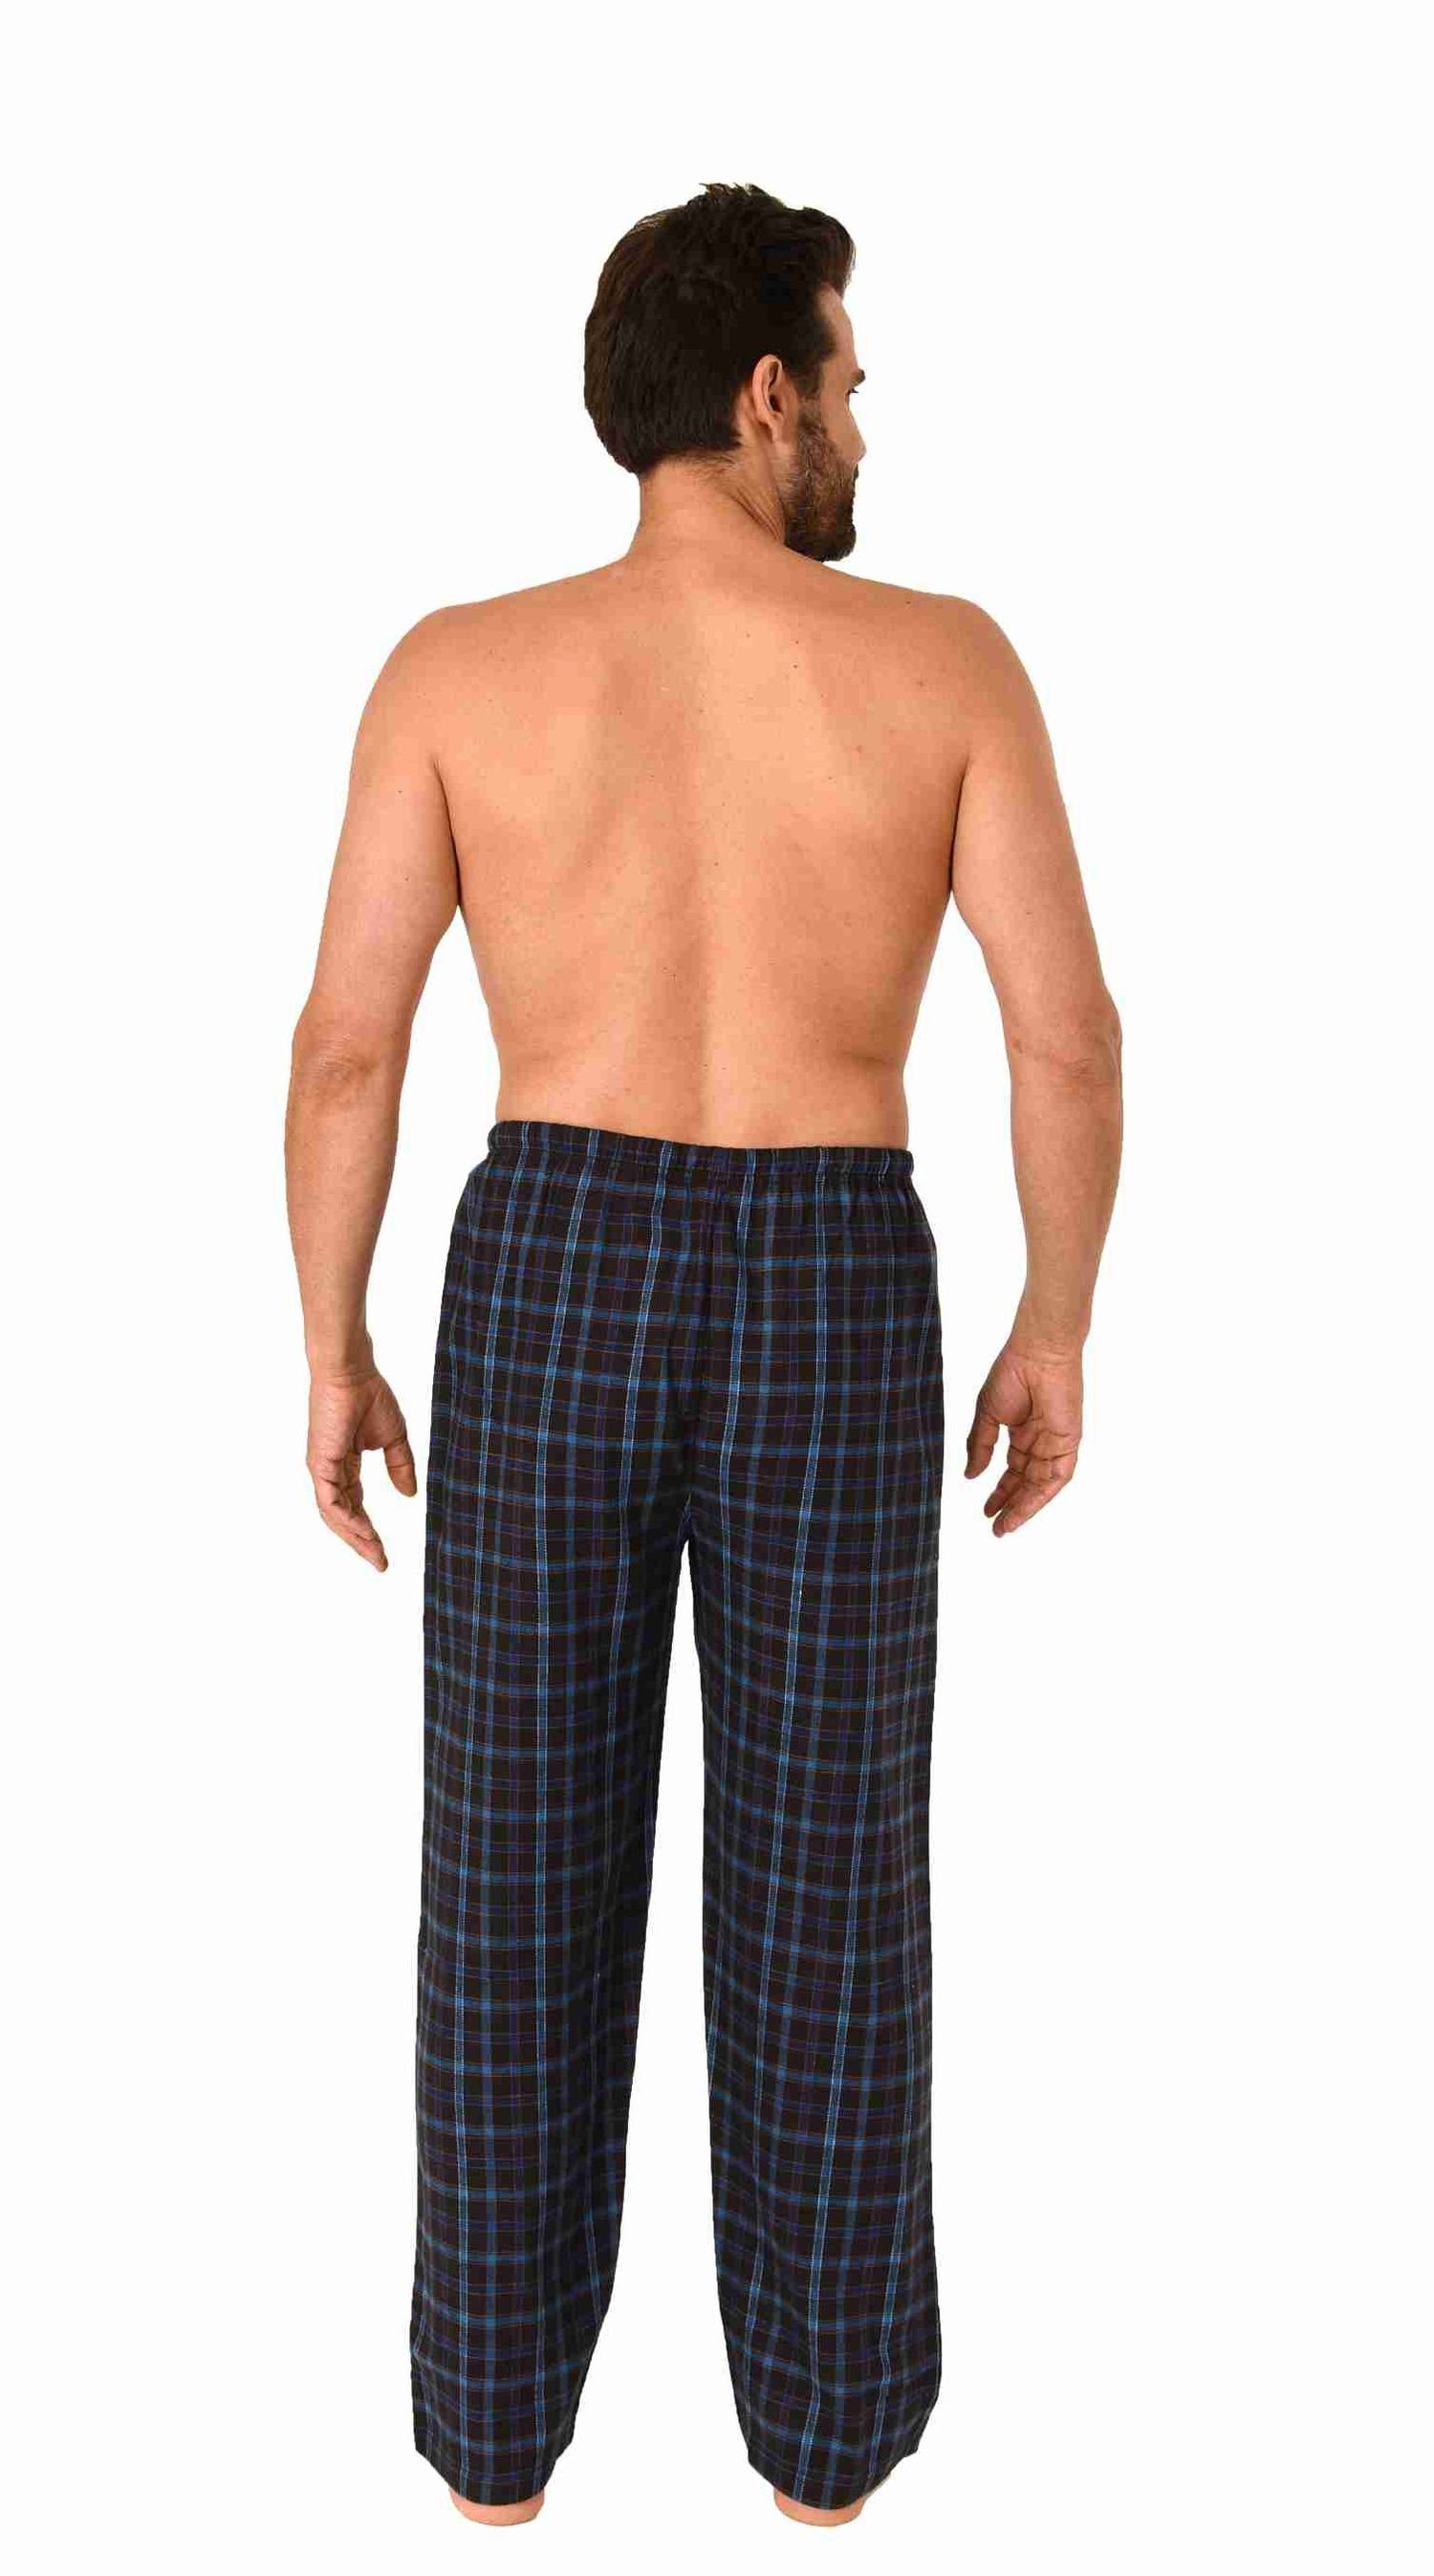 Herren Schlafanzug Pyjama lang mit Flanell Hose 281 101 90 646 